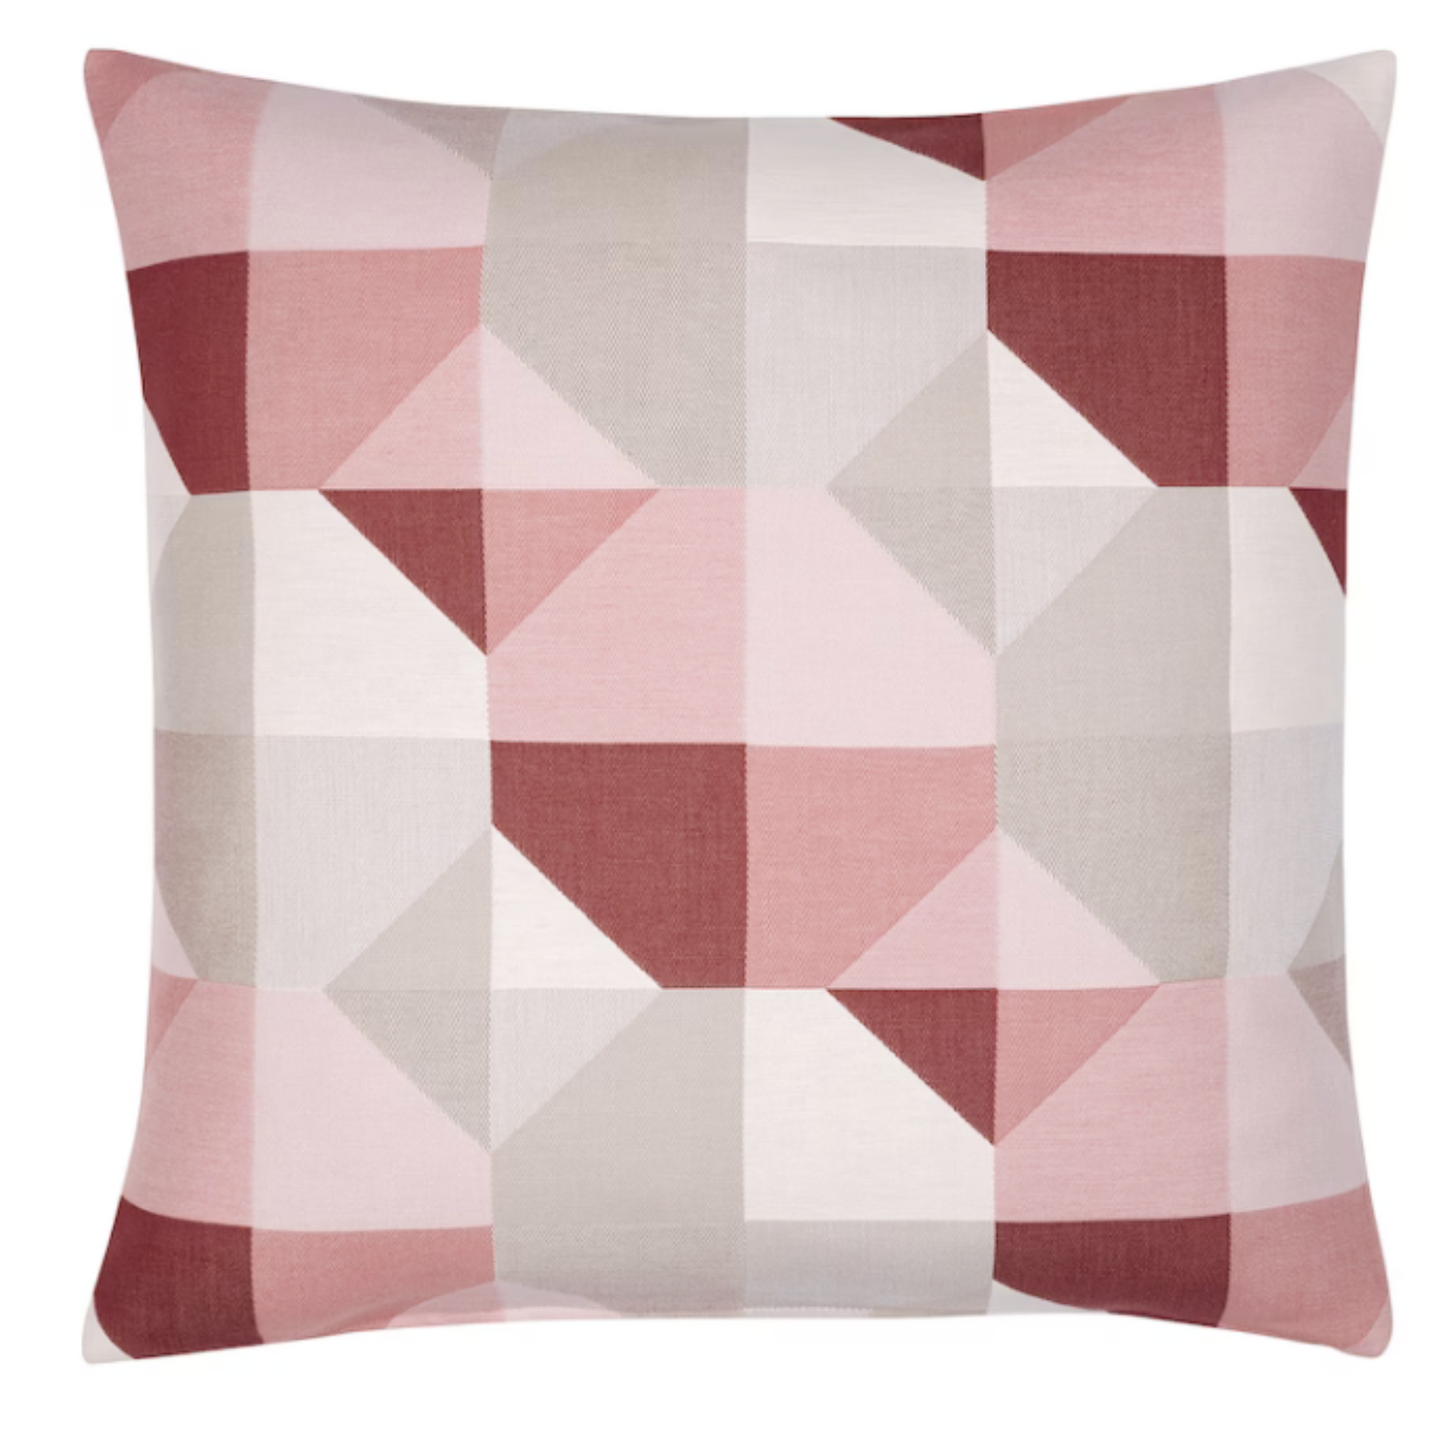 IKEA Svartho Cushion Cover 50x50cm, Rose/Beige (6784399179841)